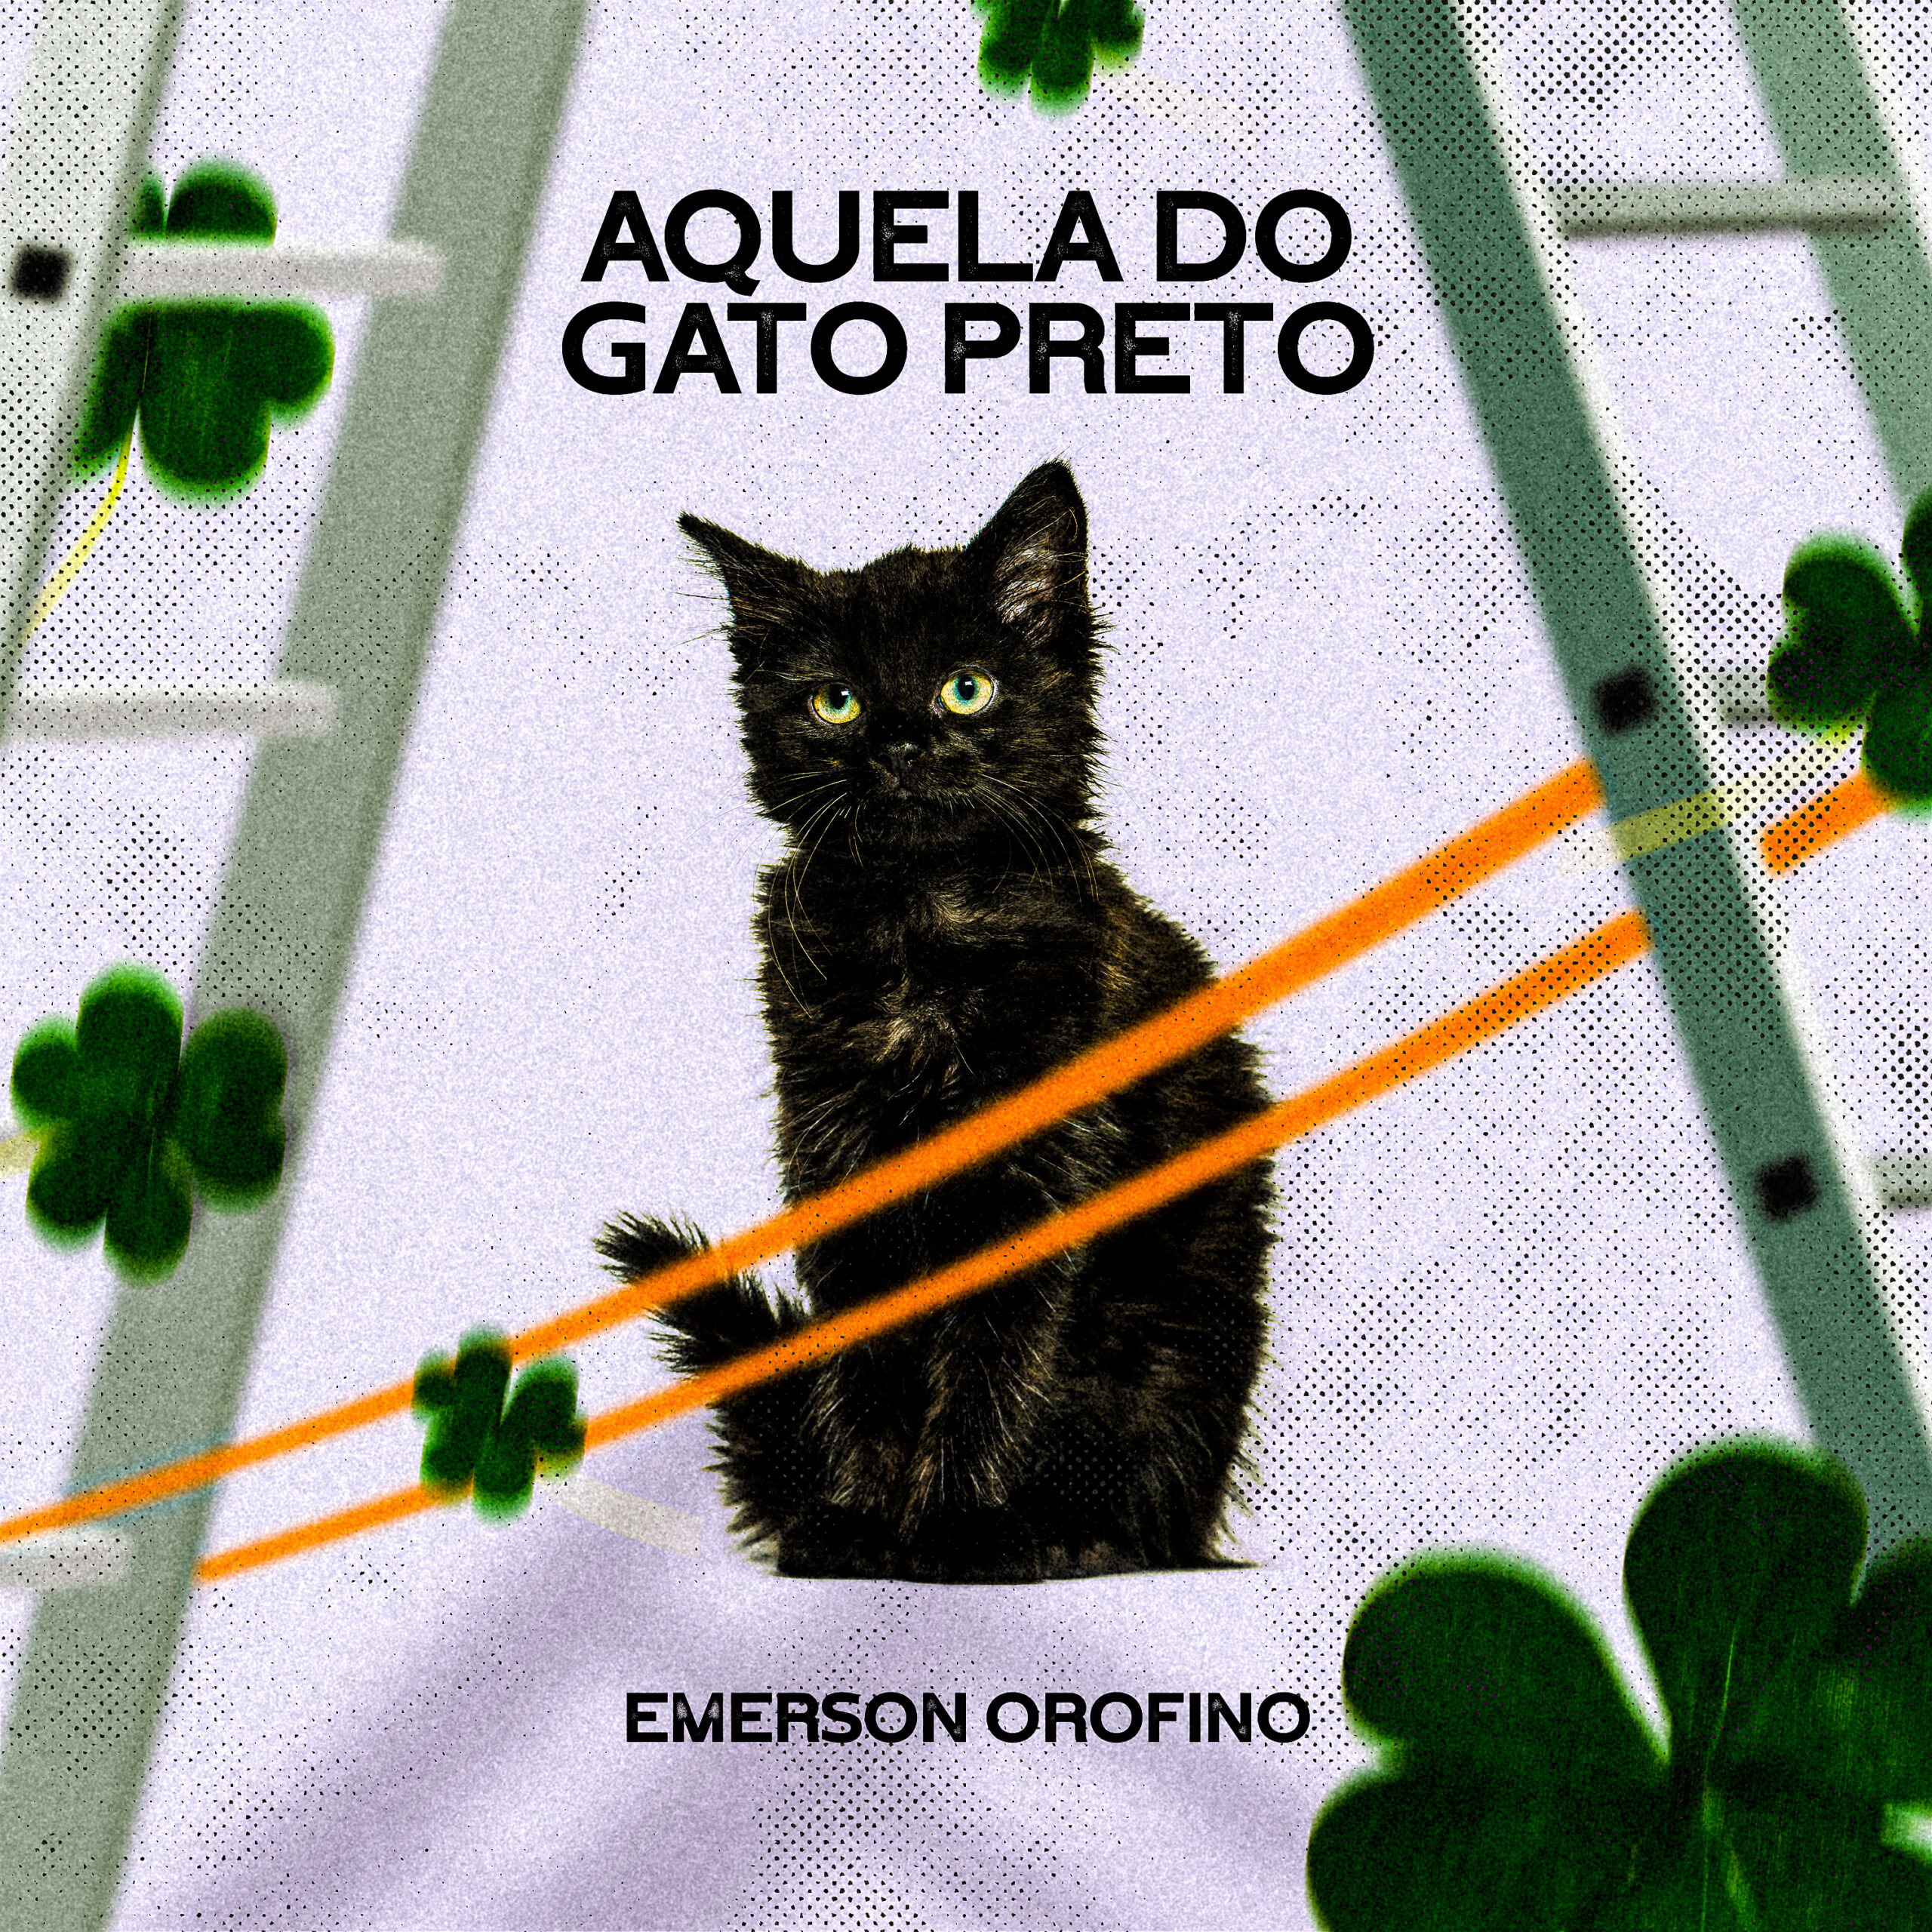 De forma humorada, Emerson Orofino critica o misticismo gospel com a música“Aquela do Gato Preto”